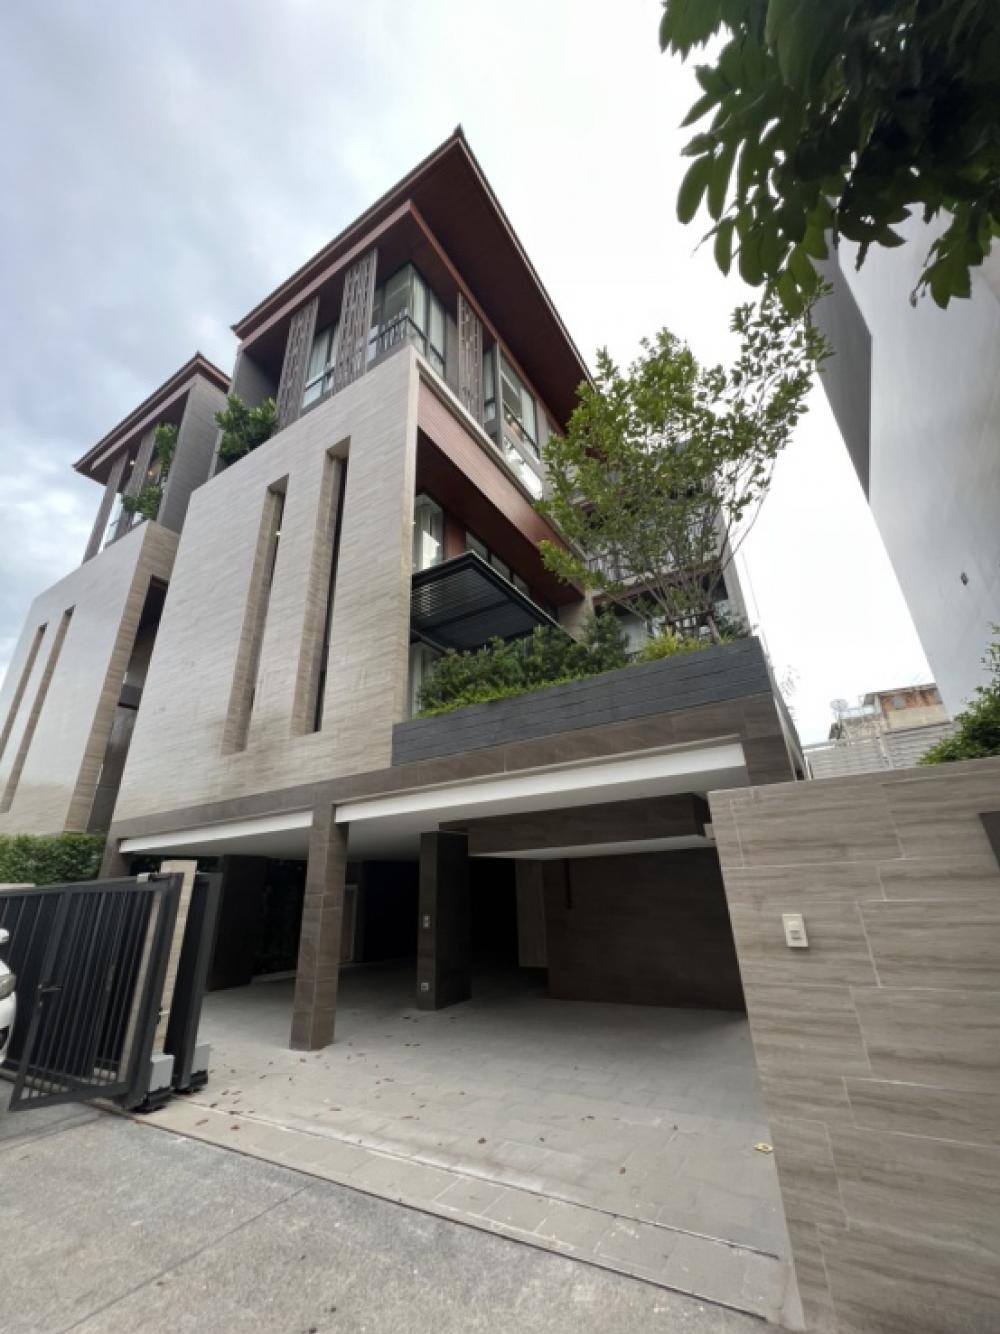 ให้เช่าบ้านสาทร นราธิวาส : Rental / Selling  : Modern House with Private Pool & Private Lift In Sathorn , 5 Bed 6 Bath 6 Parking Lot , 530 sqm , 238 sqw 🔥🔥Rental Price : 450,000 THB / month 🔥🔥🔥🔥Selling Price : 78,000,000 THB 🔥🔥#condorentalsbkk  #Fullfurnished#Electricity#PSLivi